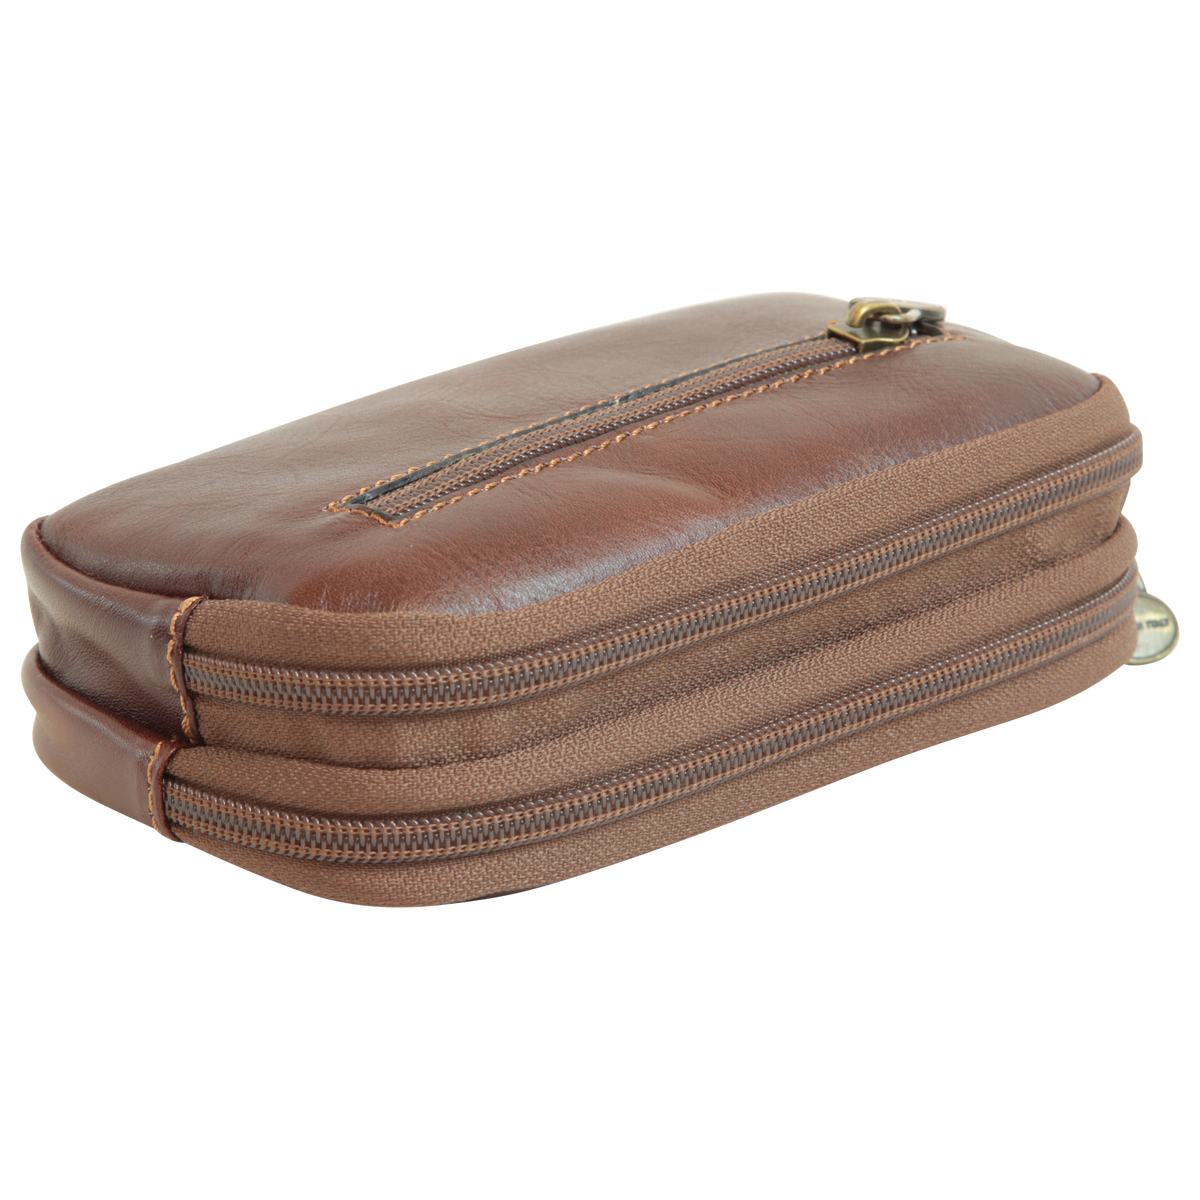 leather belt bag - brown | 413389MA UK | Old Angler Firenze